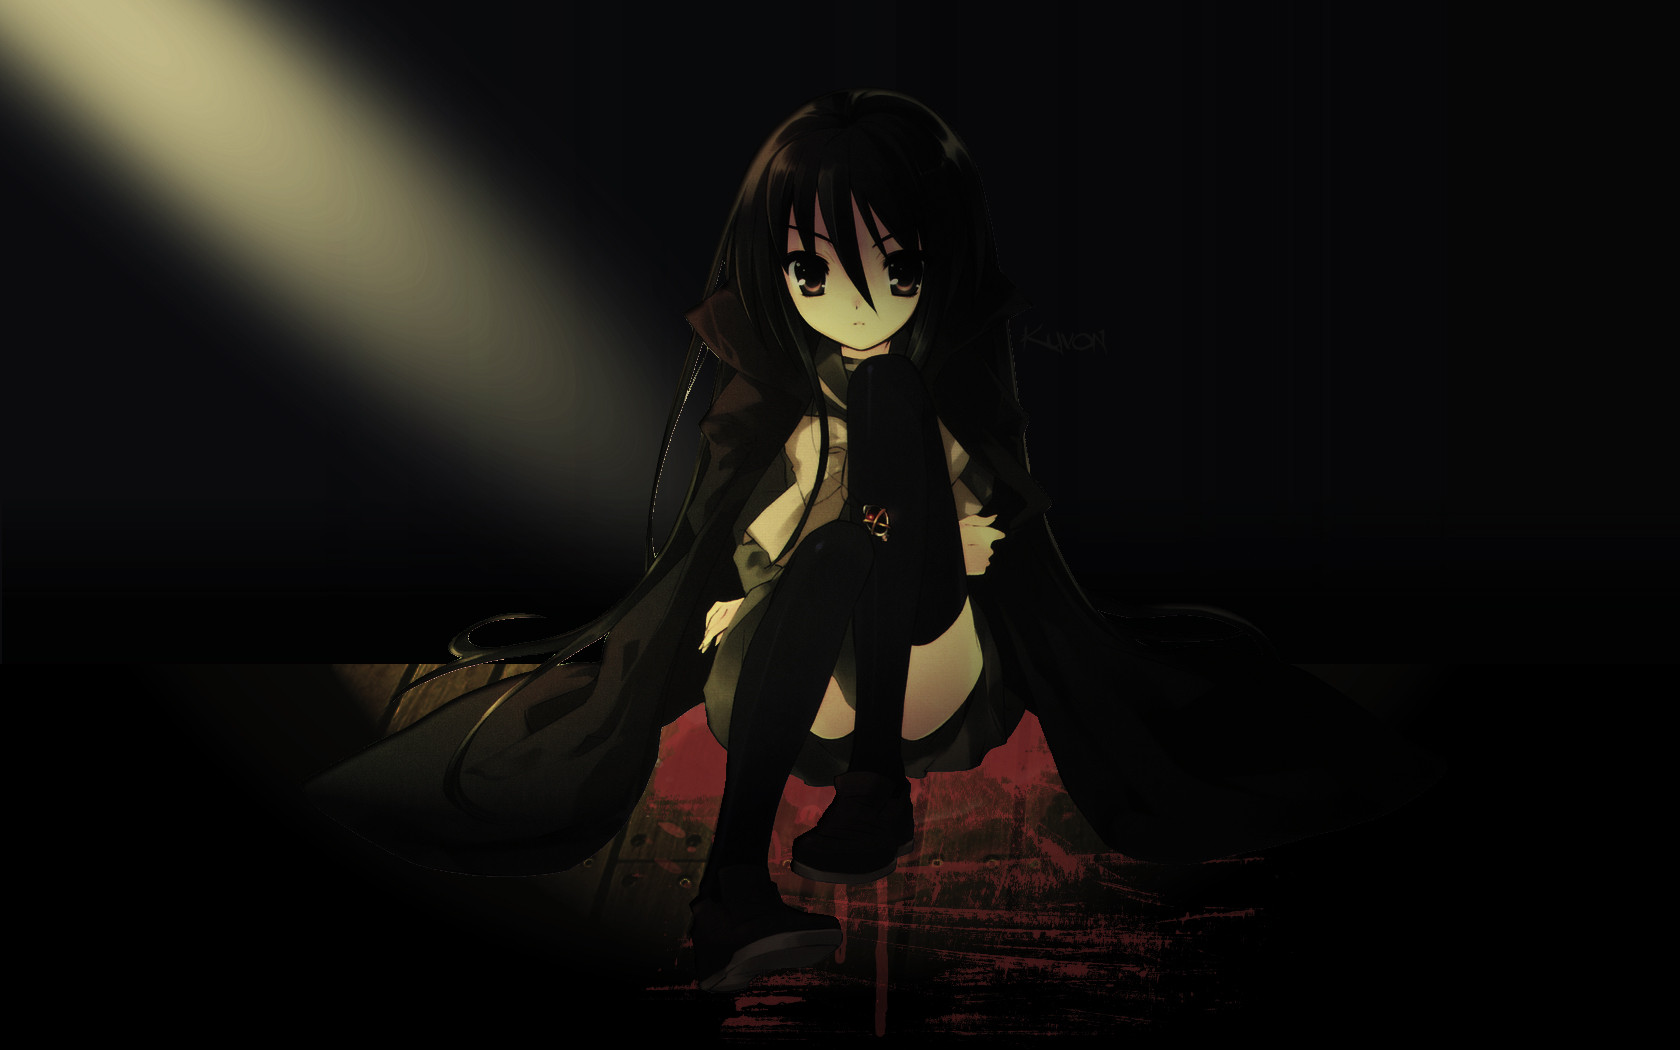 Dark Anime Wallpapers - Dark Anime Girl Background - 1680x1050 Wallpaper -  